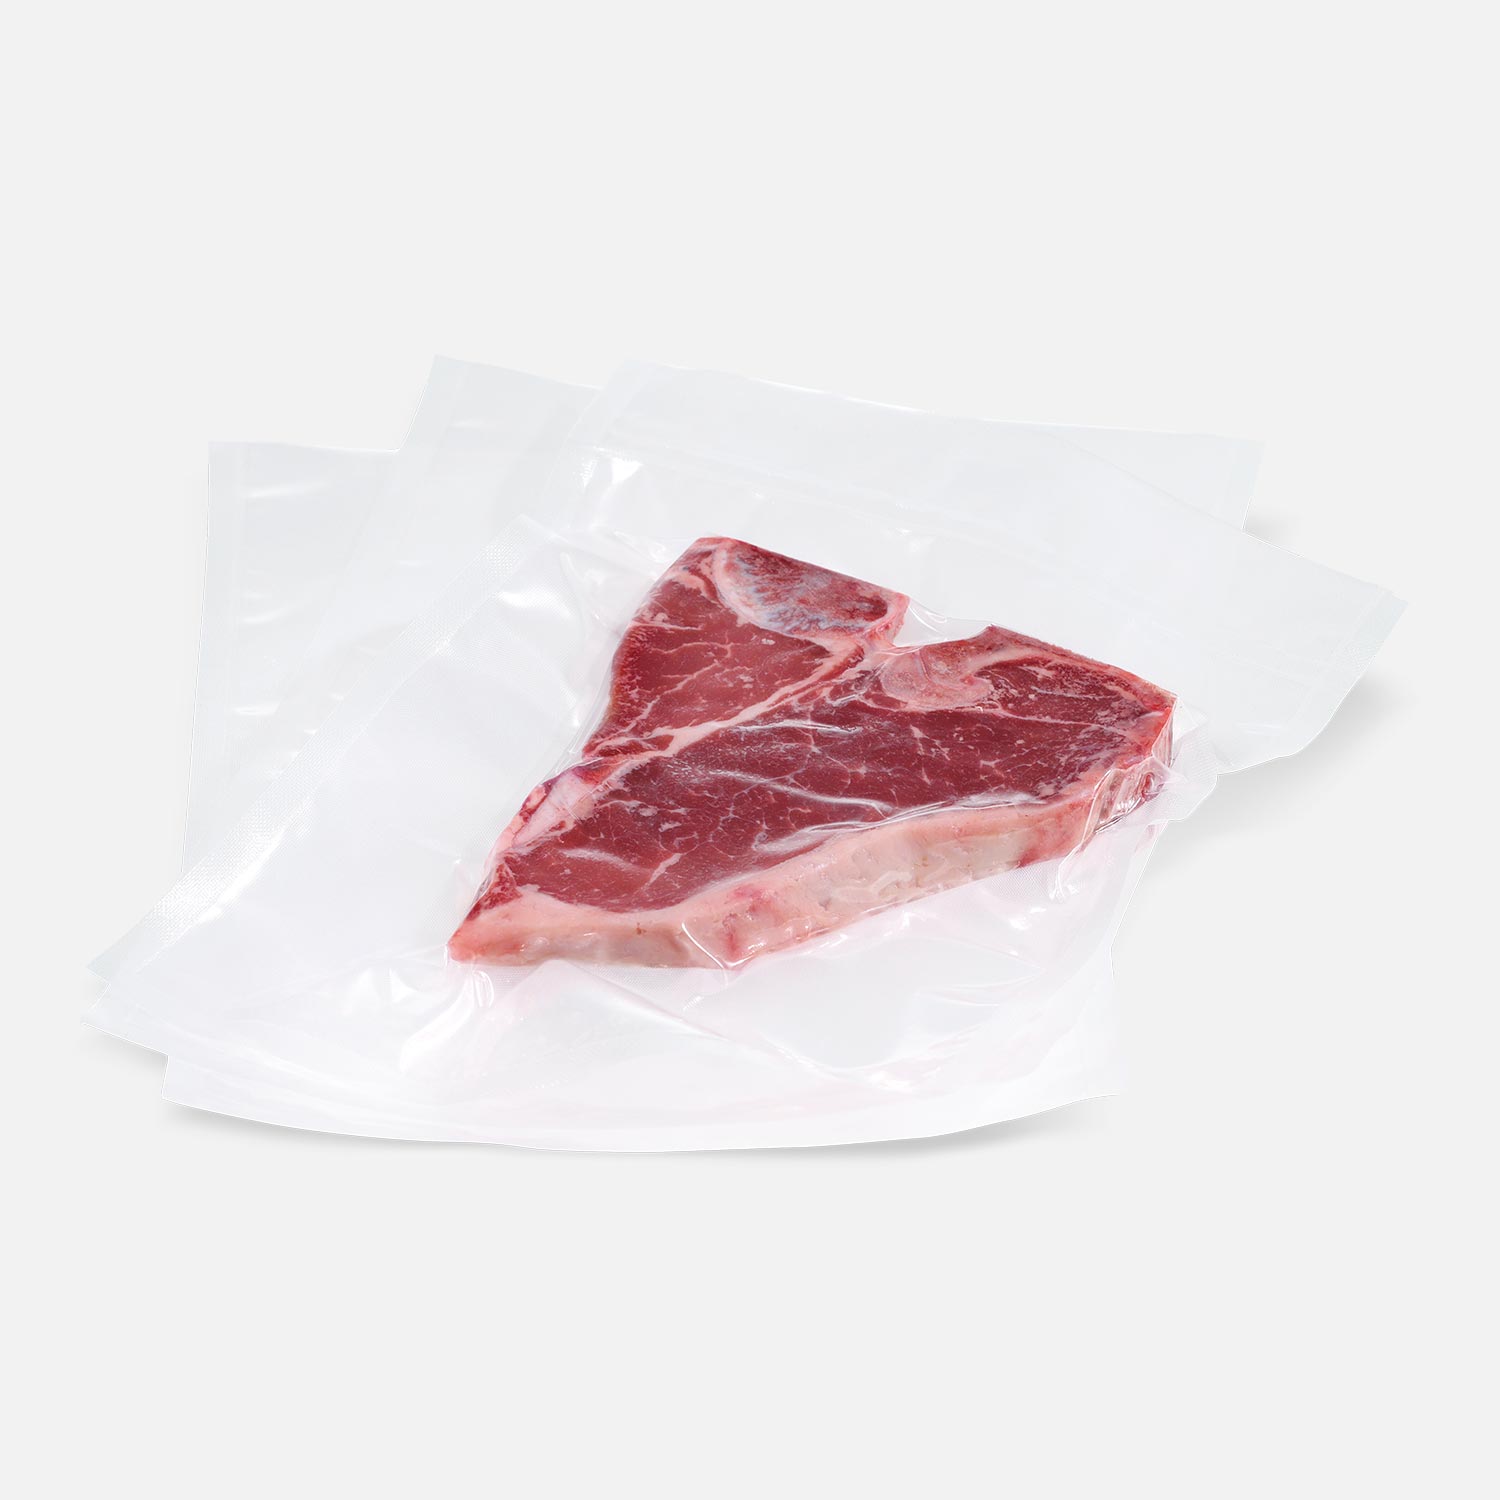 Transparent structured vacuum bag with T-Bone steak vacuum-sealed